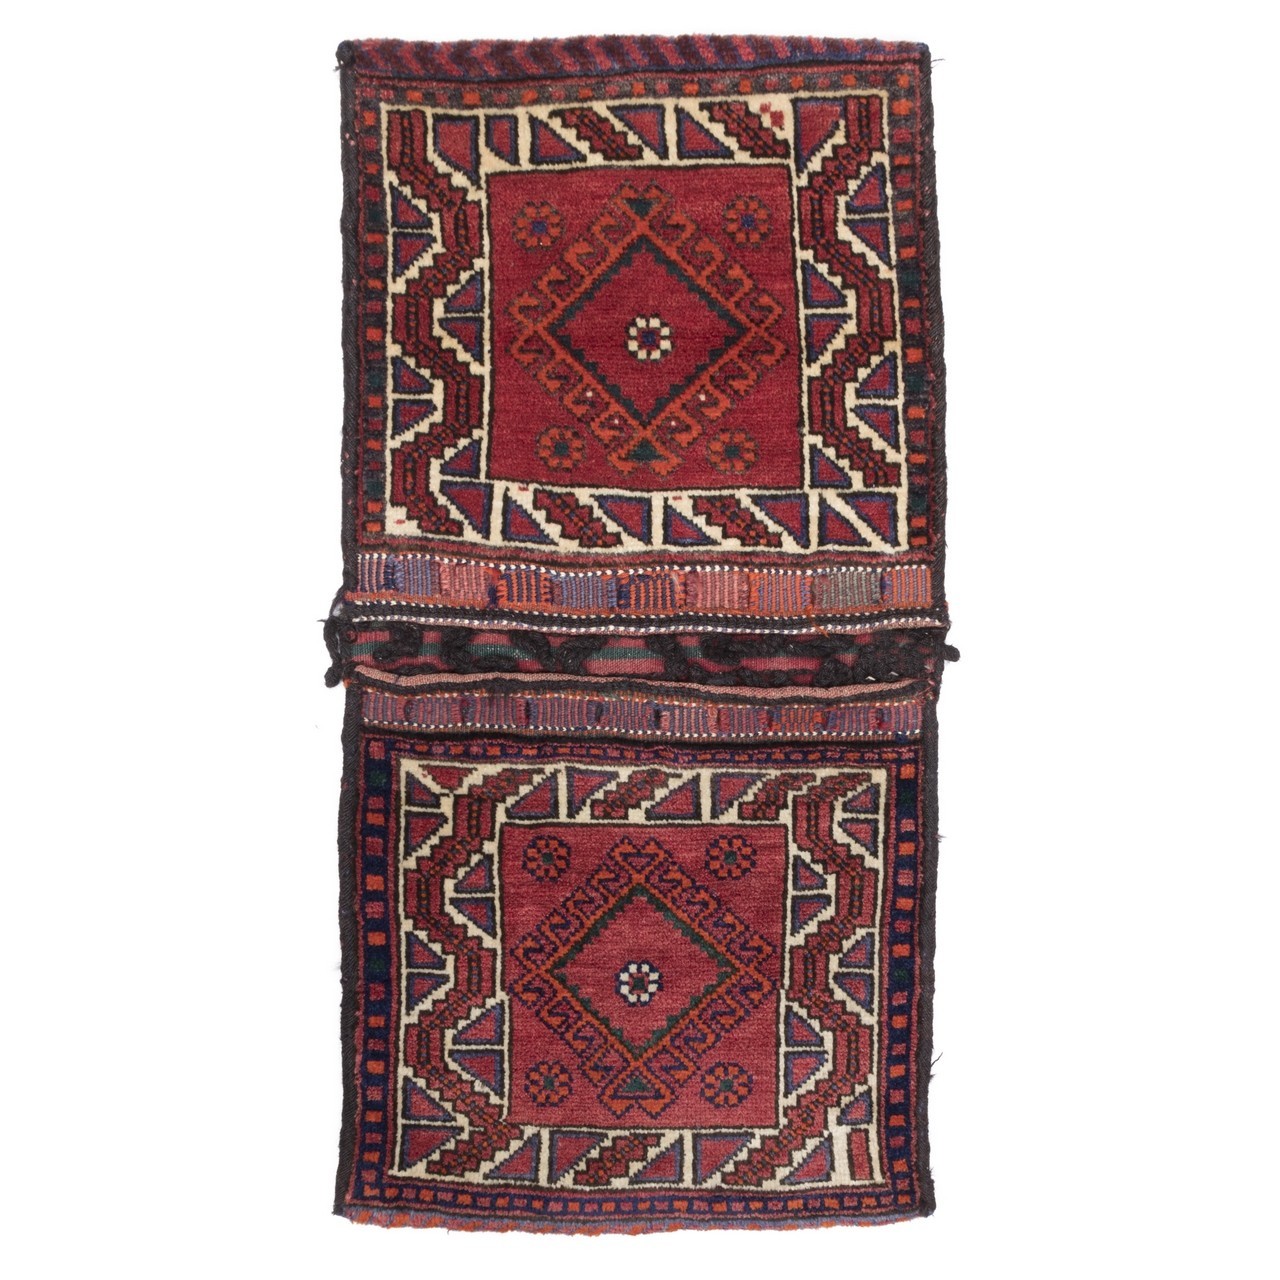 Satteltasche handgeknüpfter persischer Teppich. Ziffer 169005